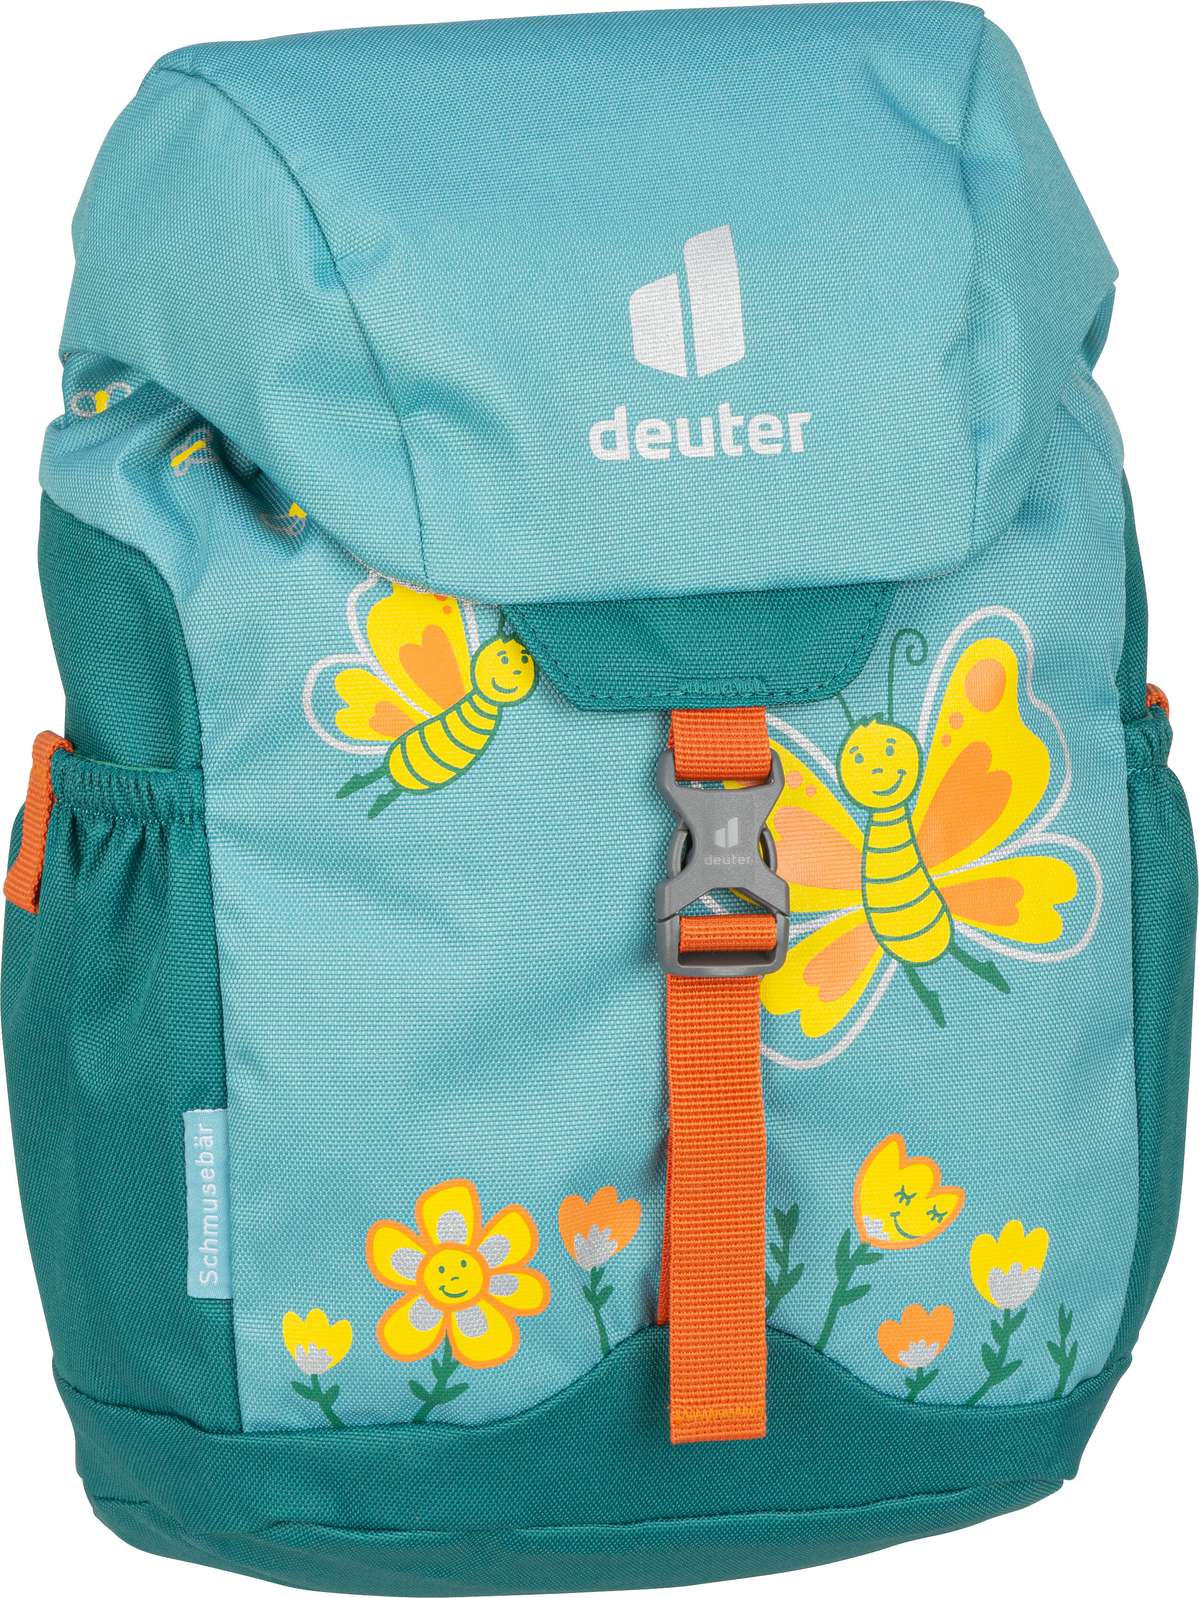 Deuter Schmusebär - Dustblue/Alpinegreen